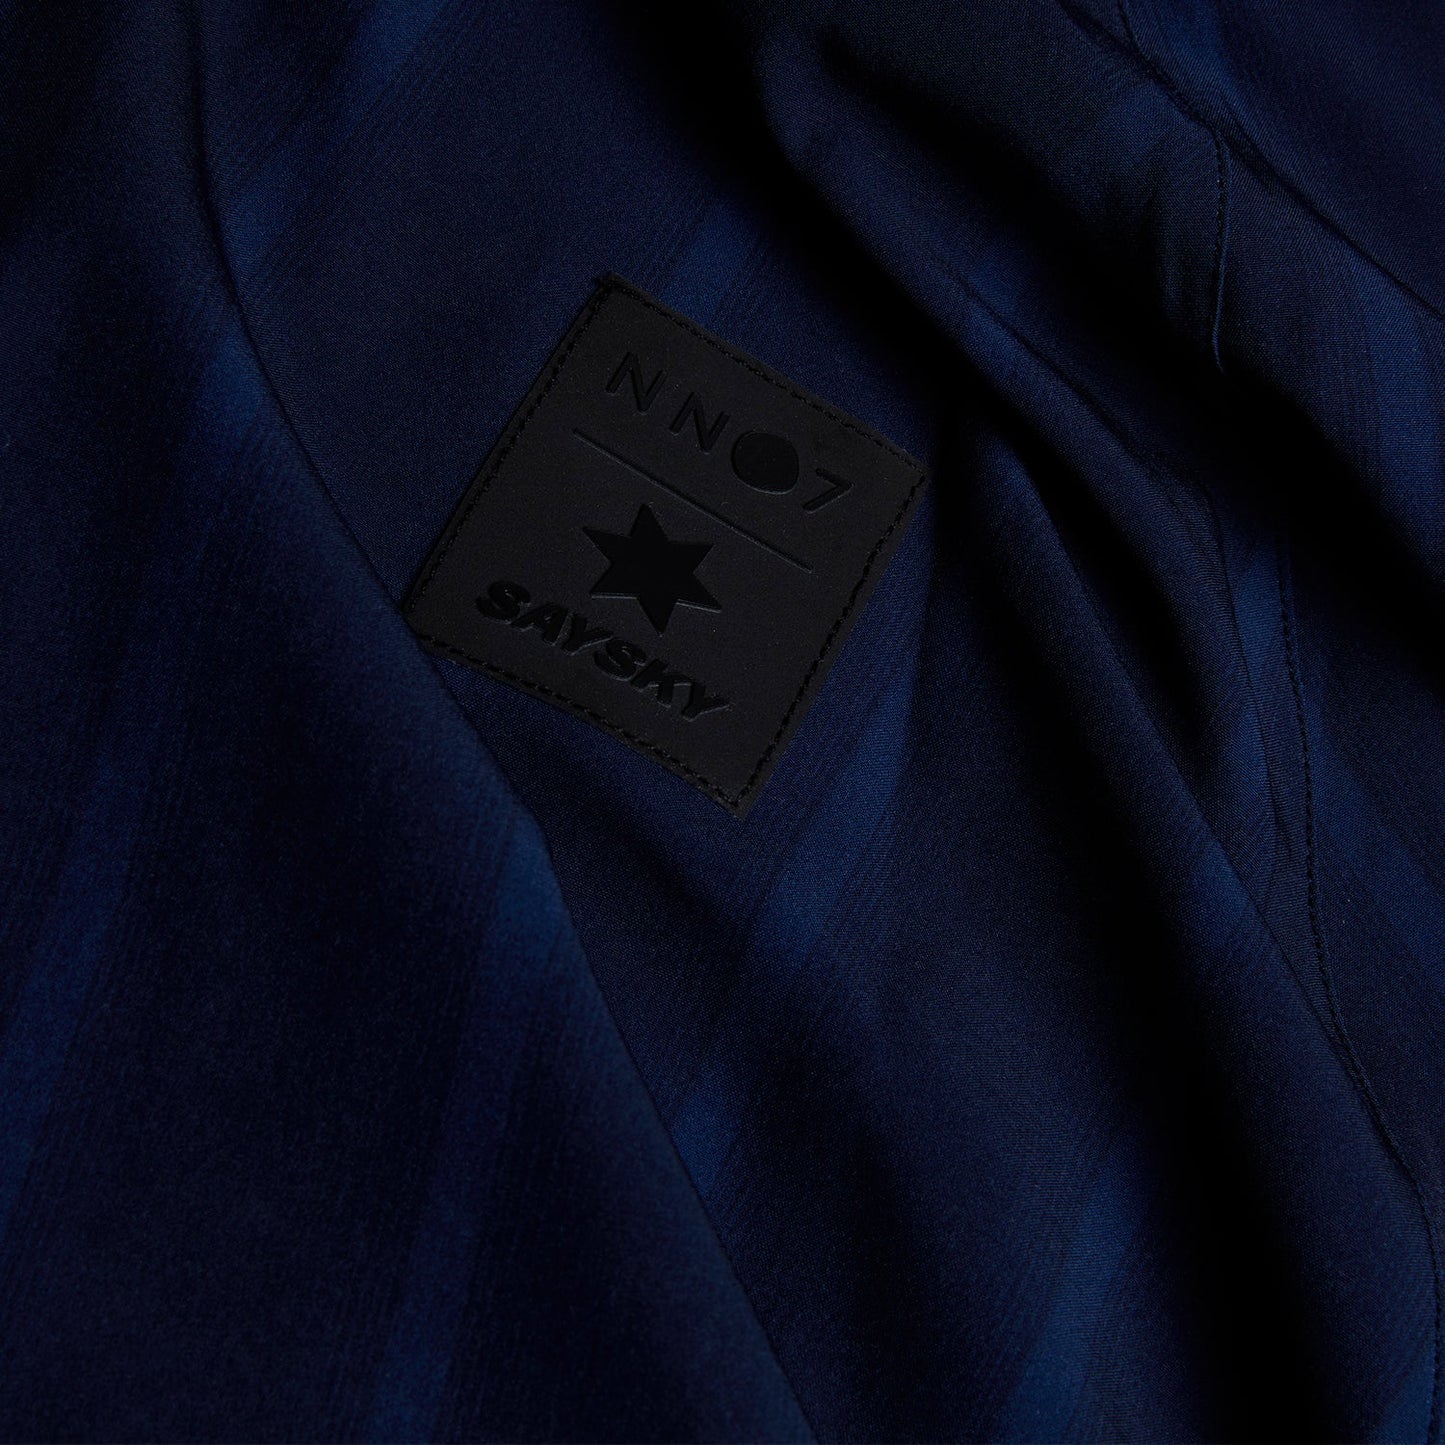 ランニングジャケット ZMRJA01 Nn07 X Saysky Pace Jacket - Black/Navy Blue Stripe [ユニセックス]